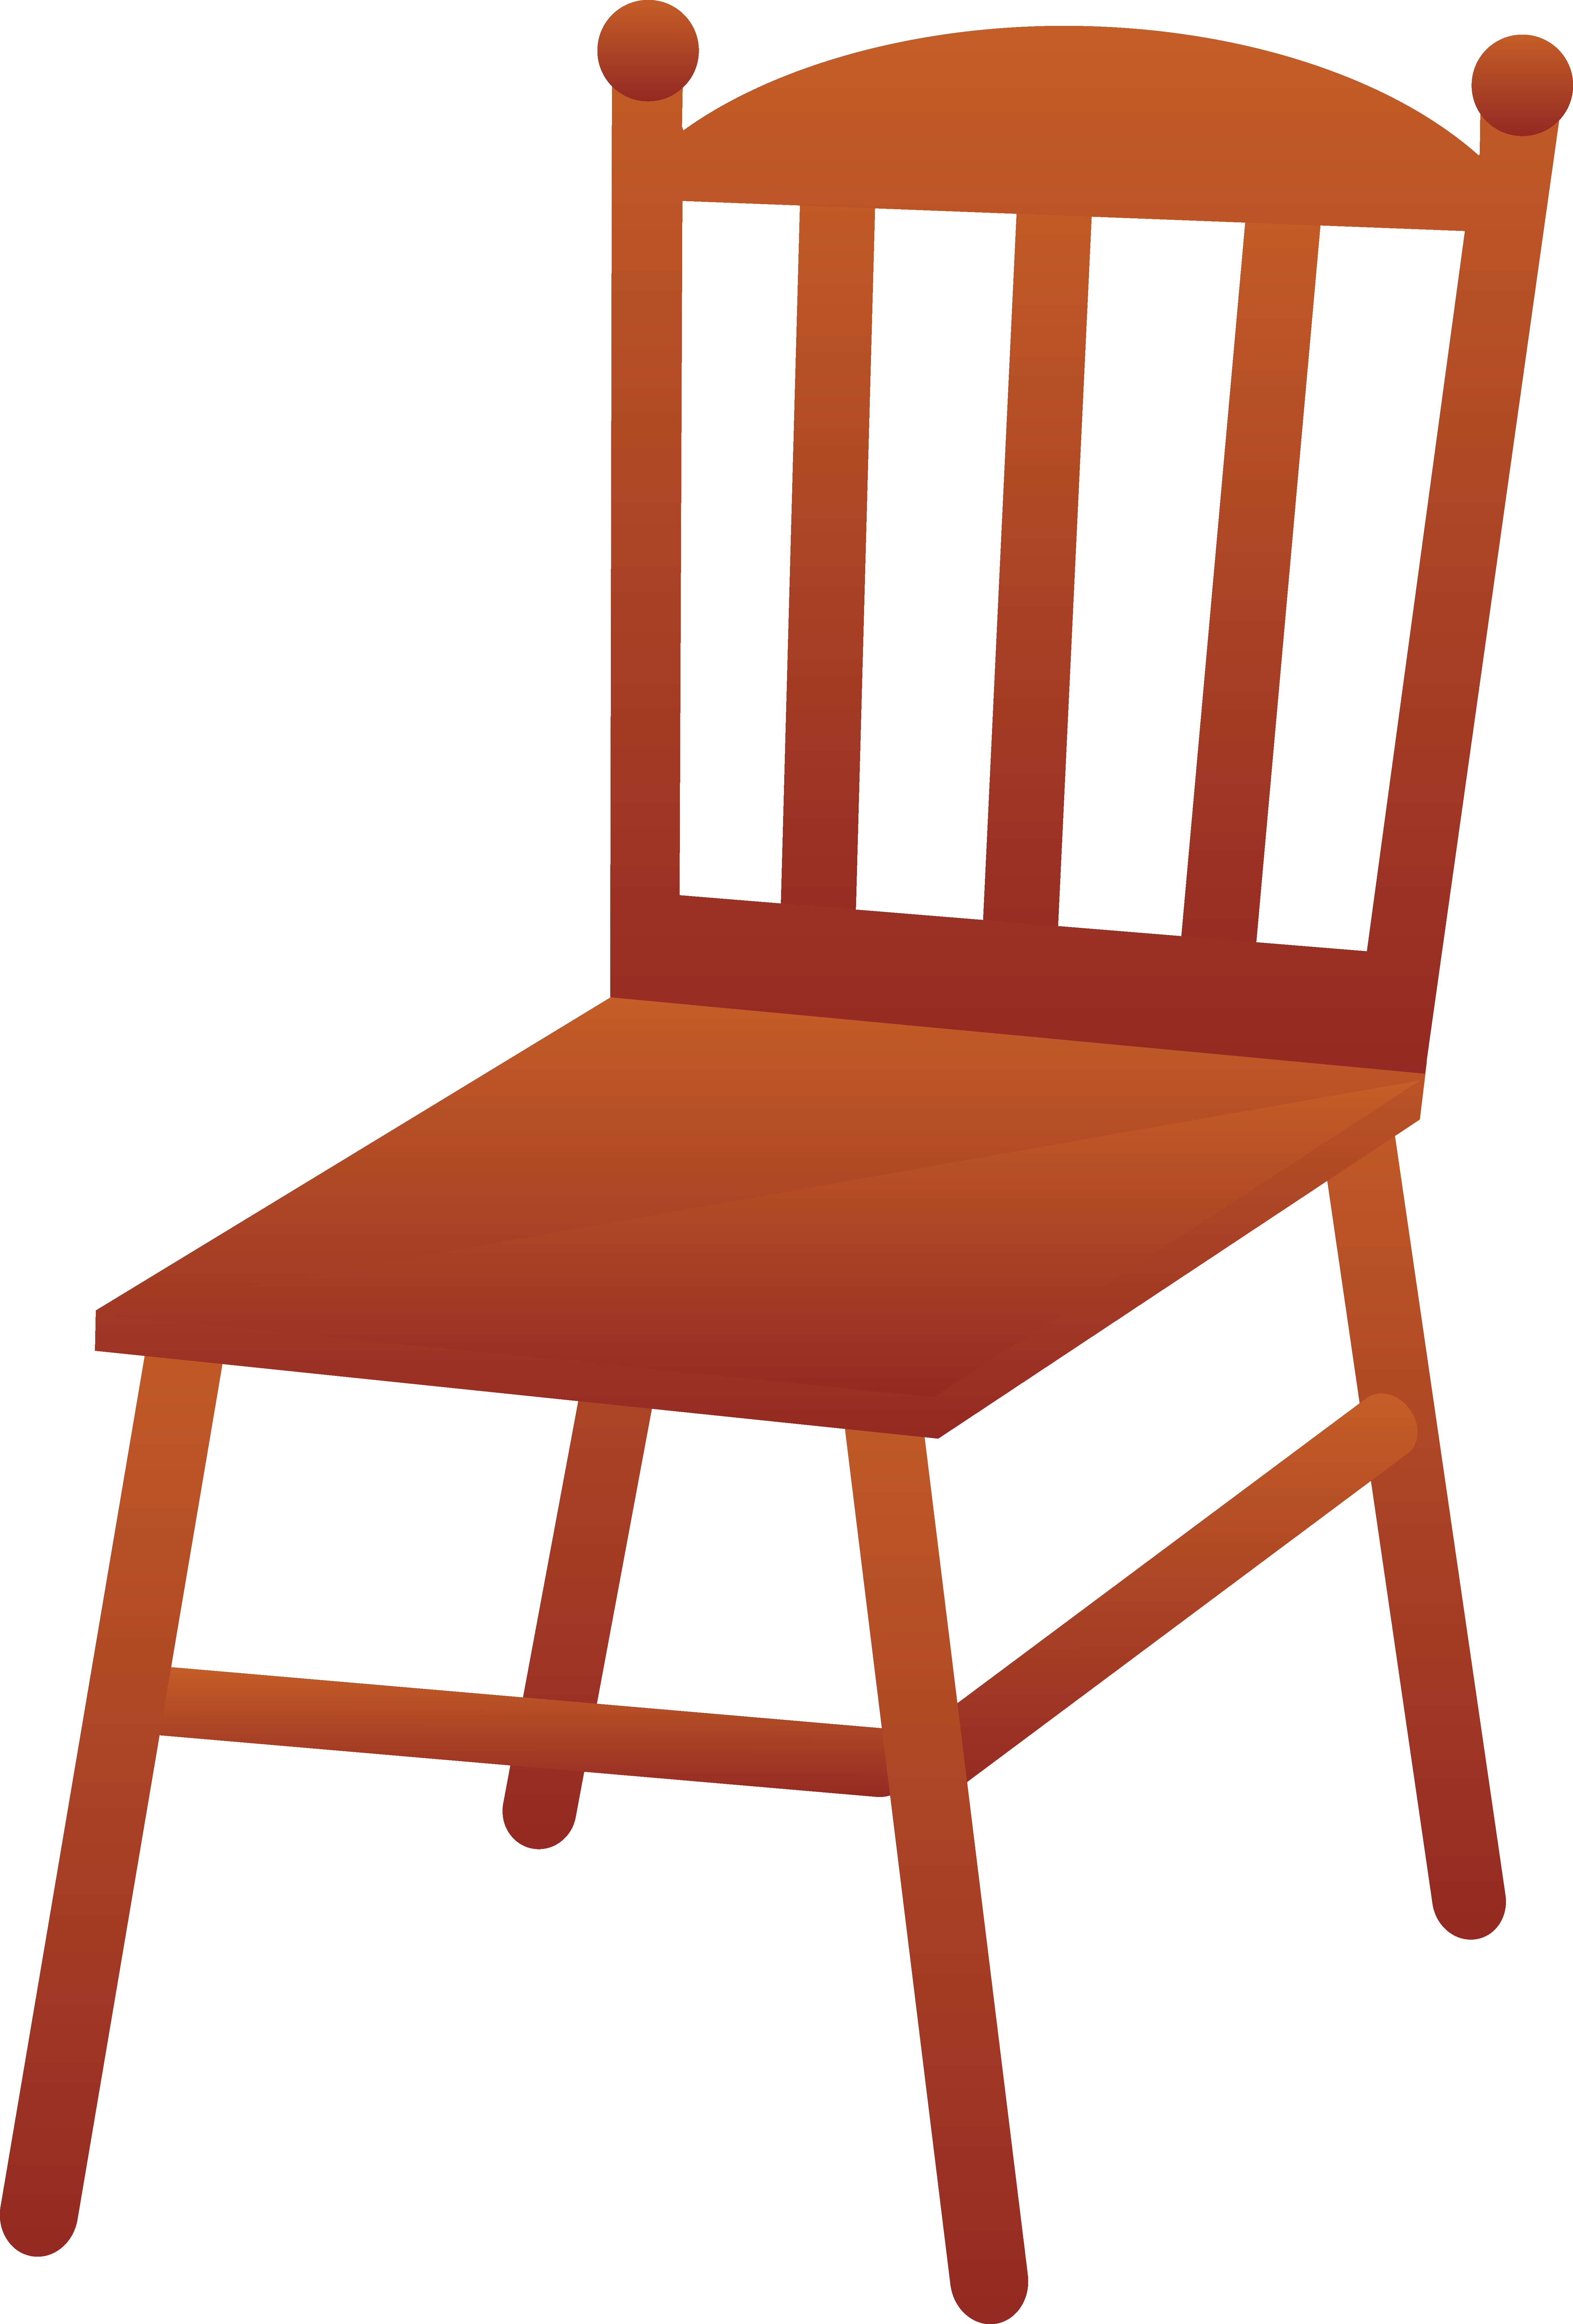 clipart chair brown chair